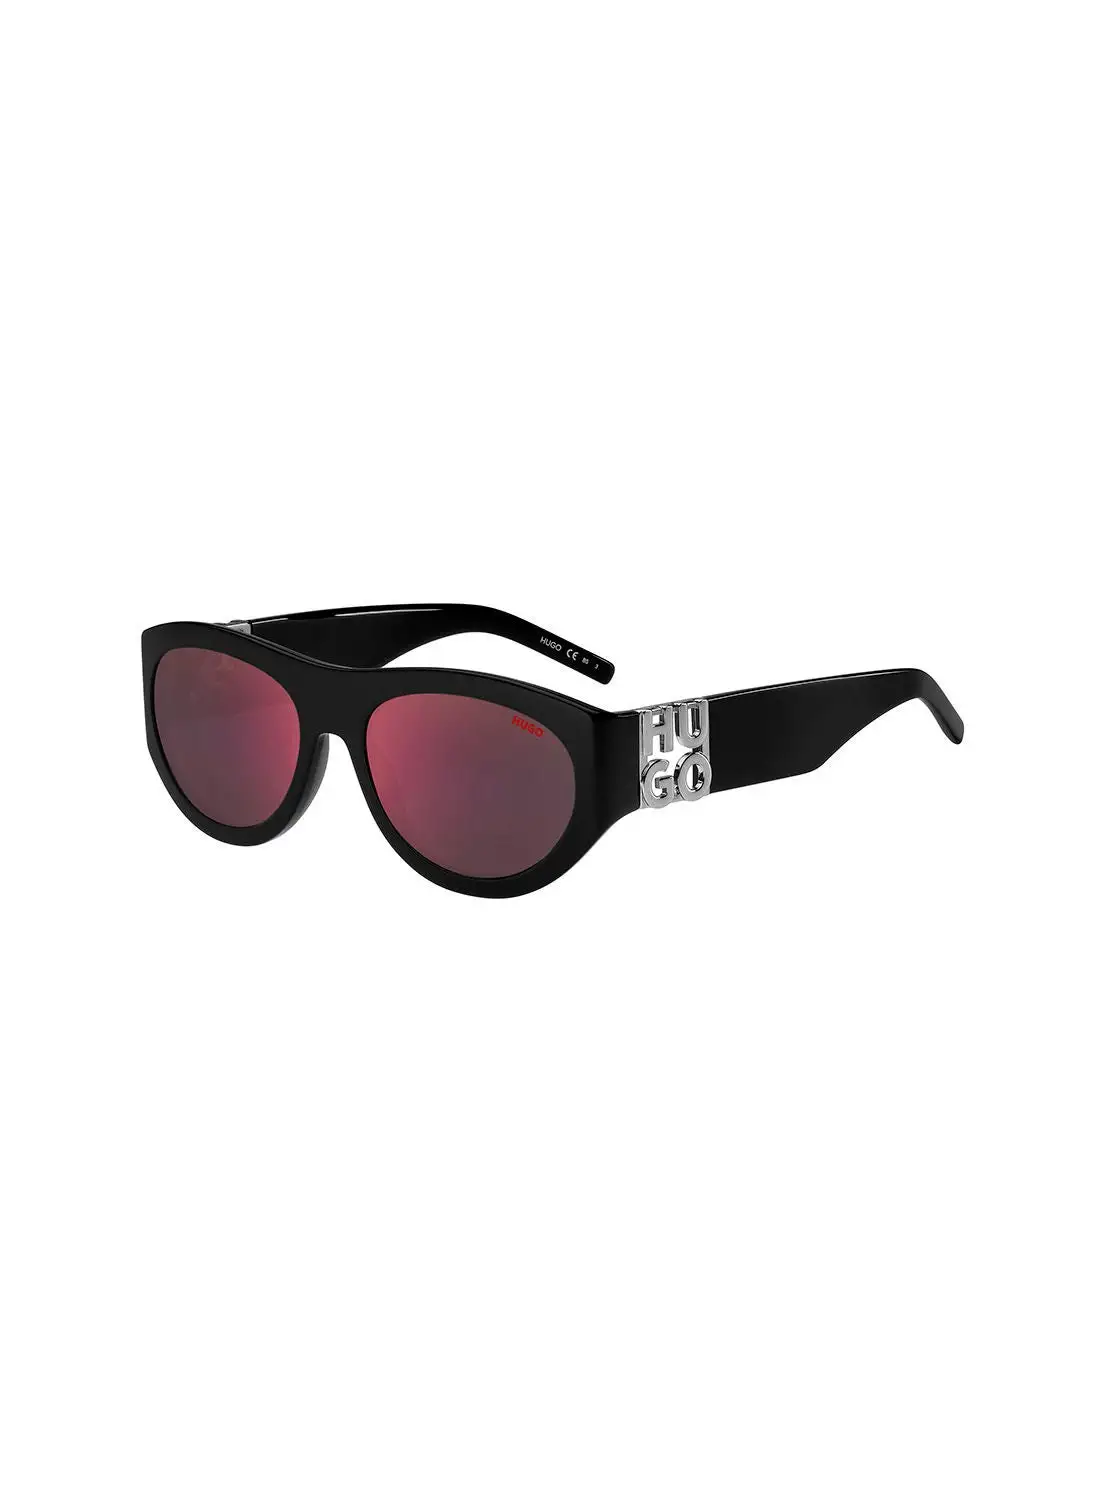 HUGO Men's UV Protection Rectangular Sunglasses - Hg 1254/S Black Red 57 - Lens Size: 57 Mm